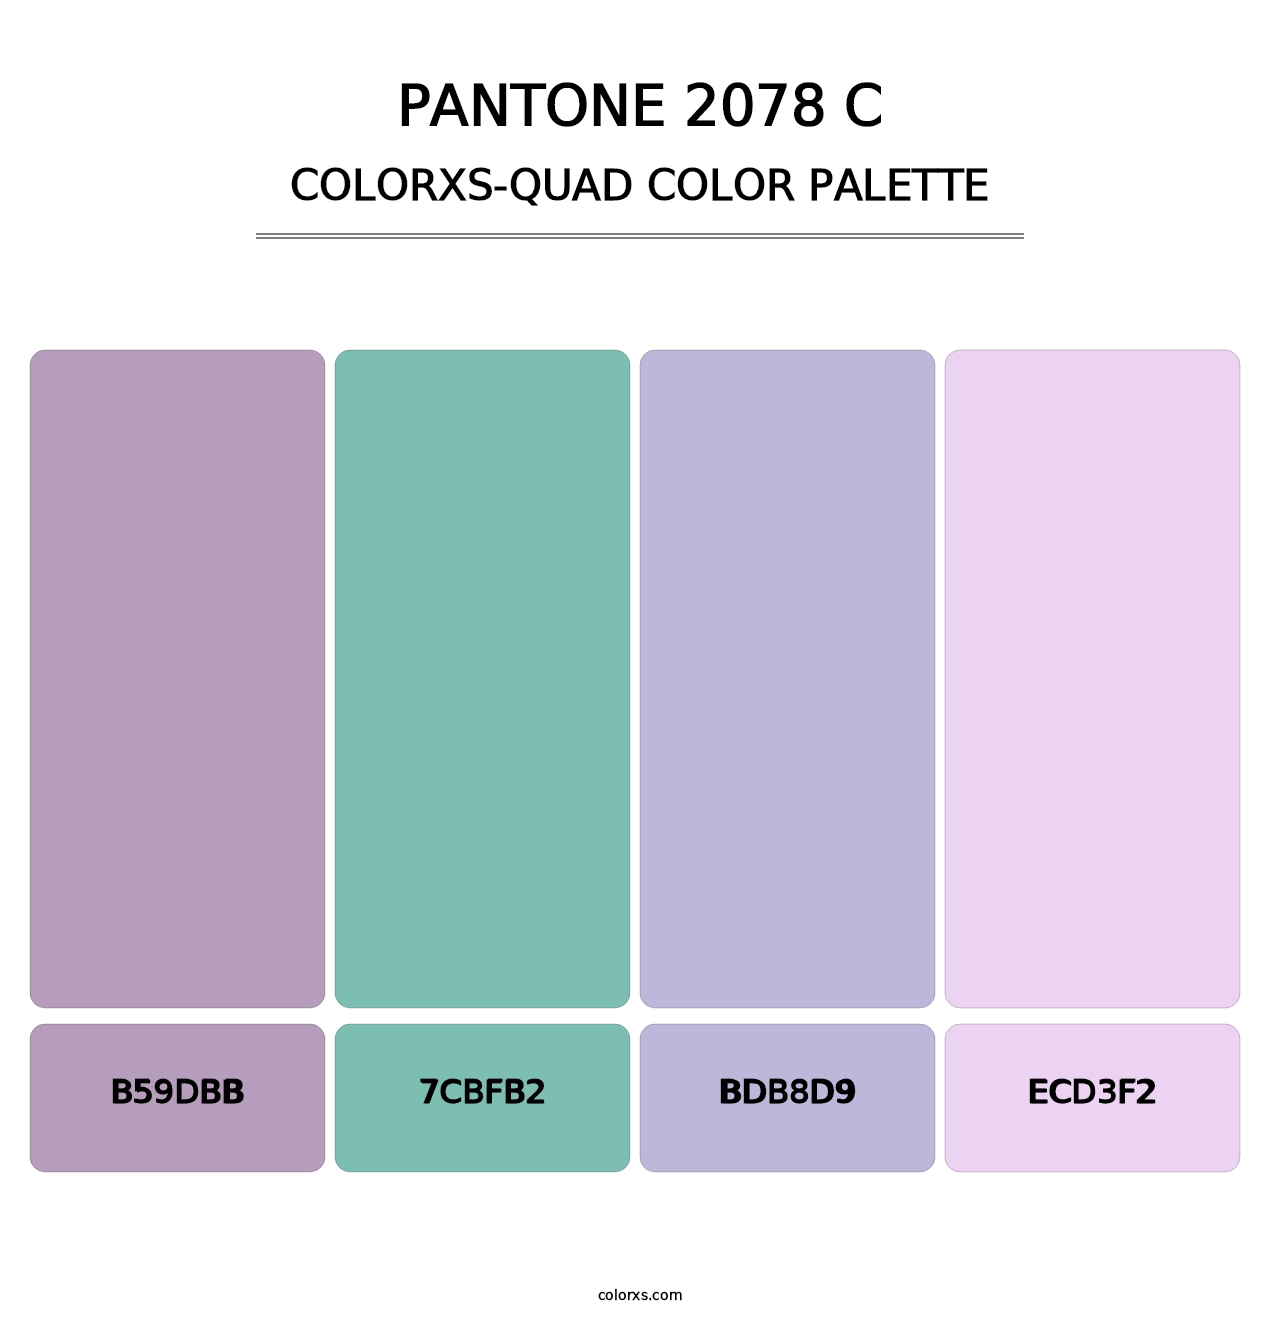 PANTONE 2078 C - Colorxs Quad Palette